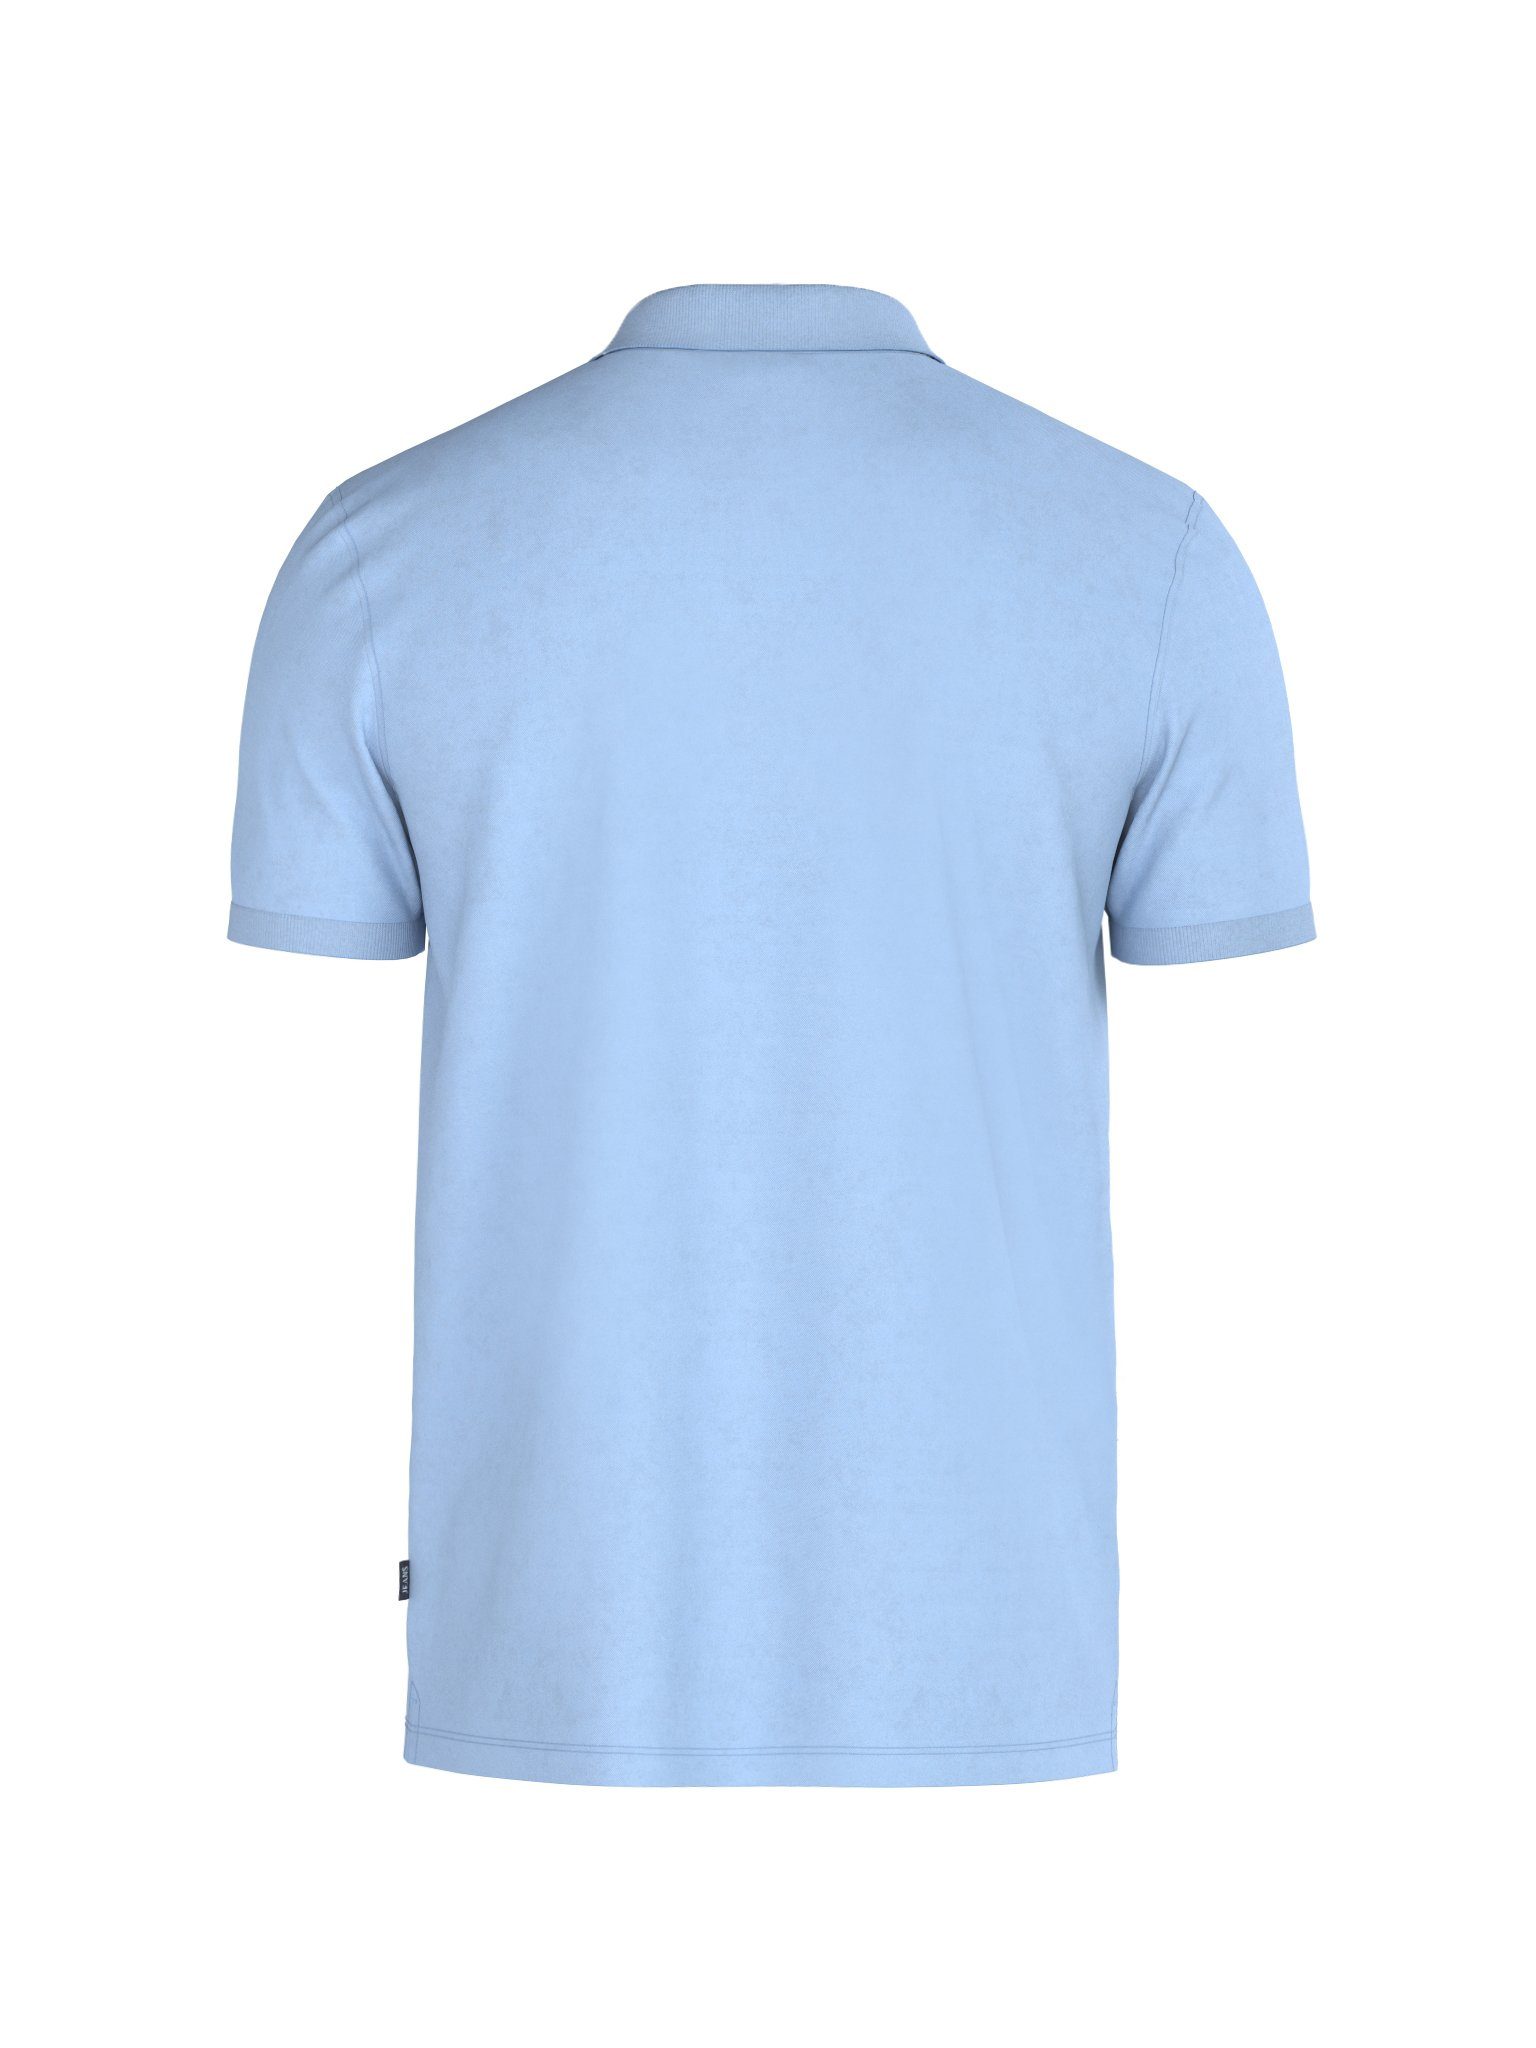 JJJ-02Ambrosio Poloshirt blau mit tonigem Jeans Logo-Stitching Joop